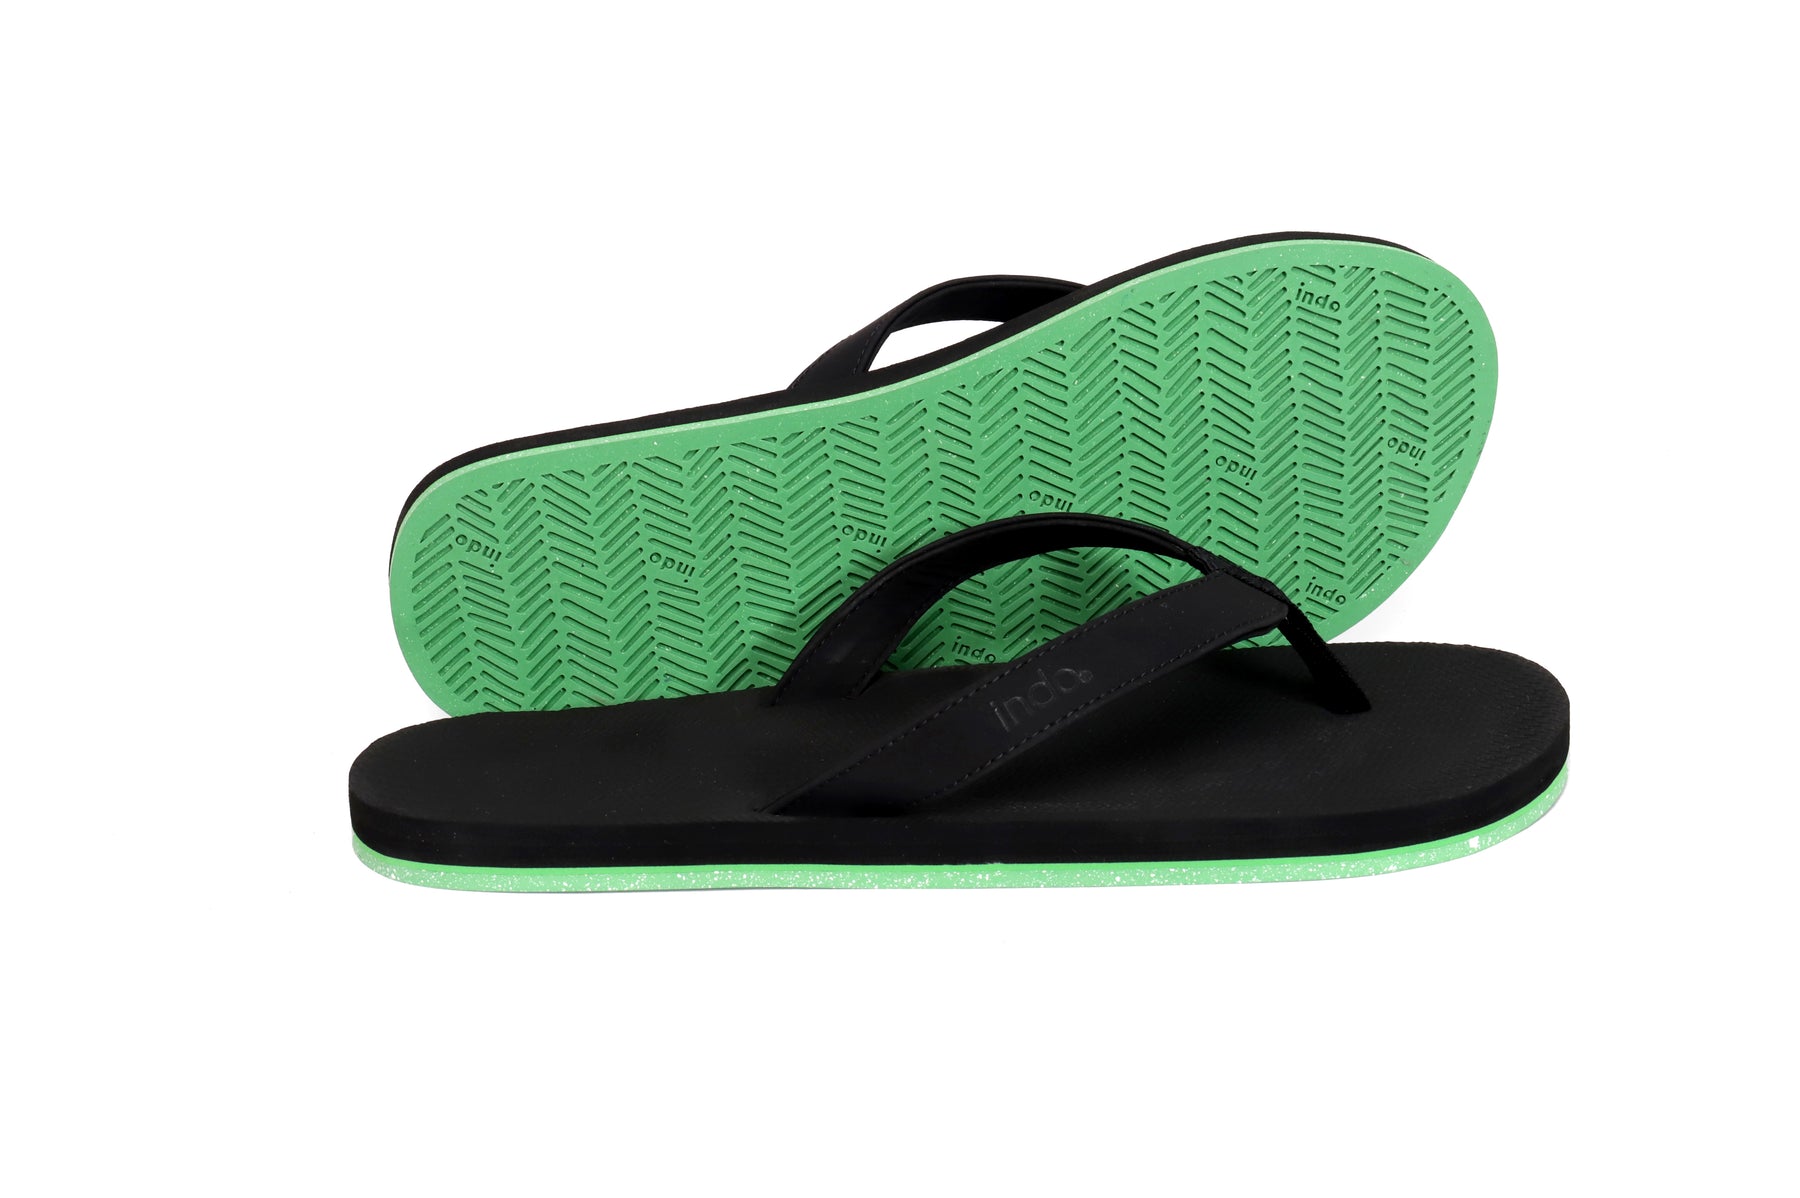 Men's Flip Flops Sneaker Sole - Black/Lime